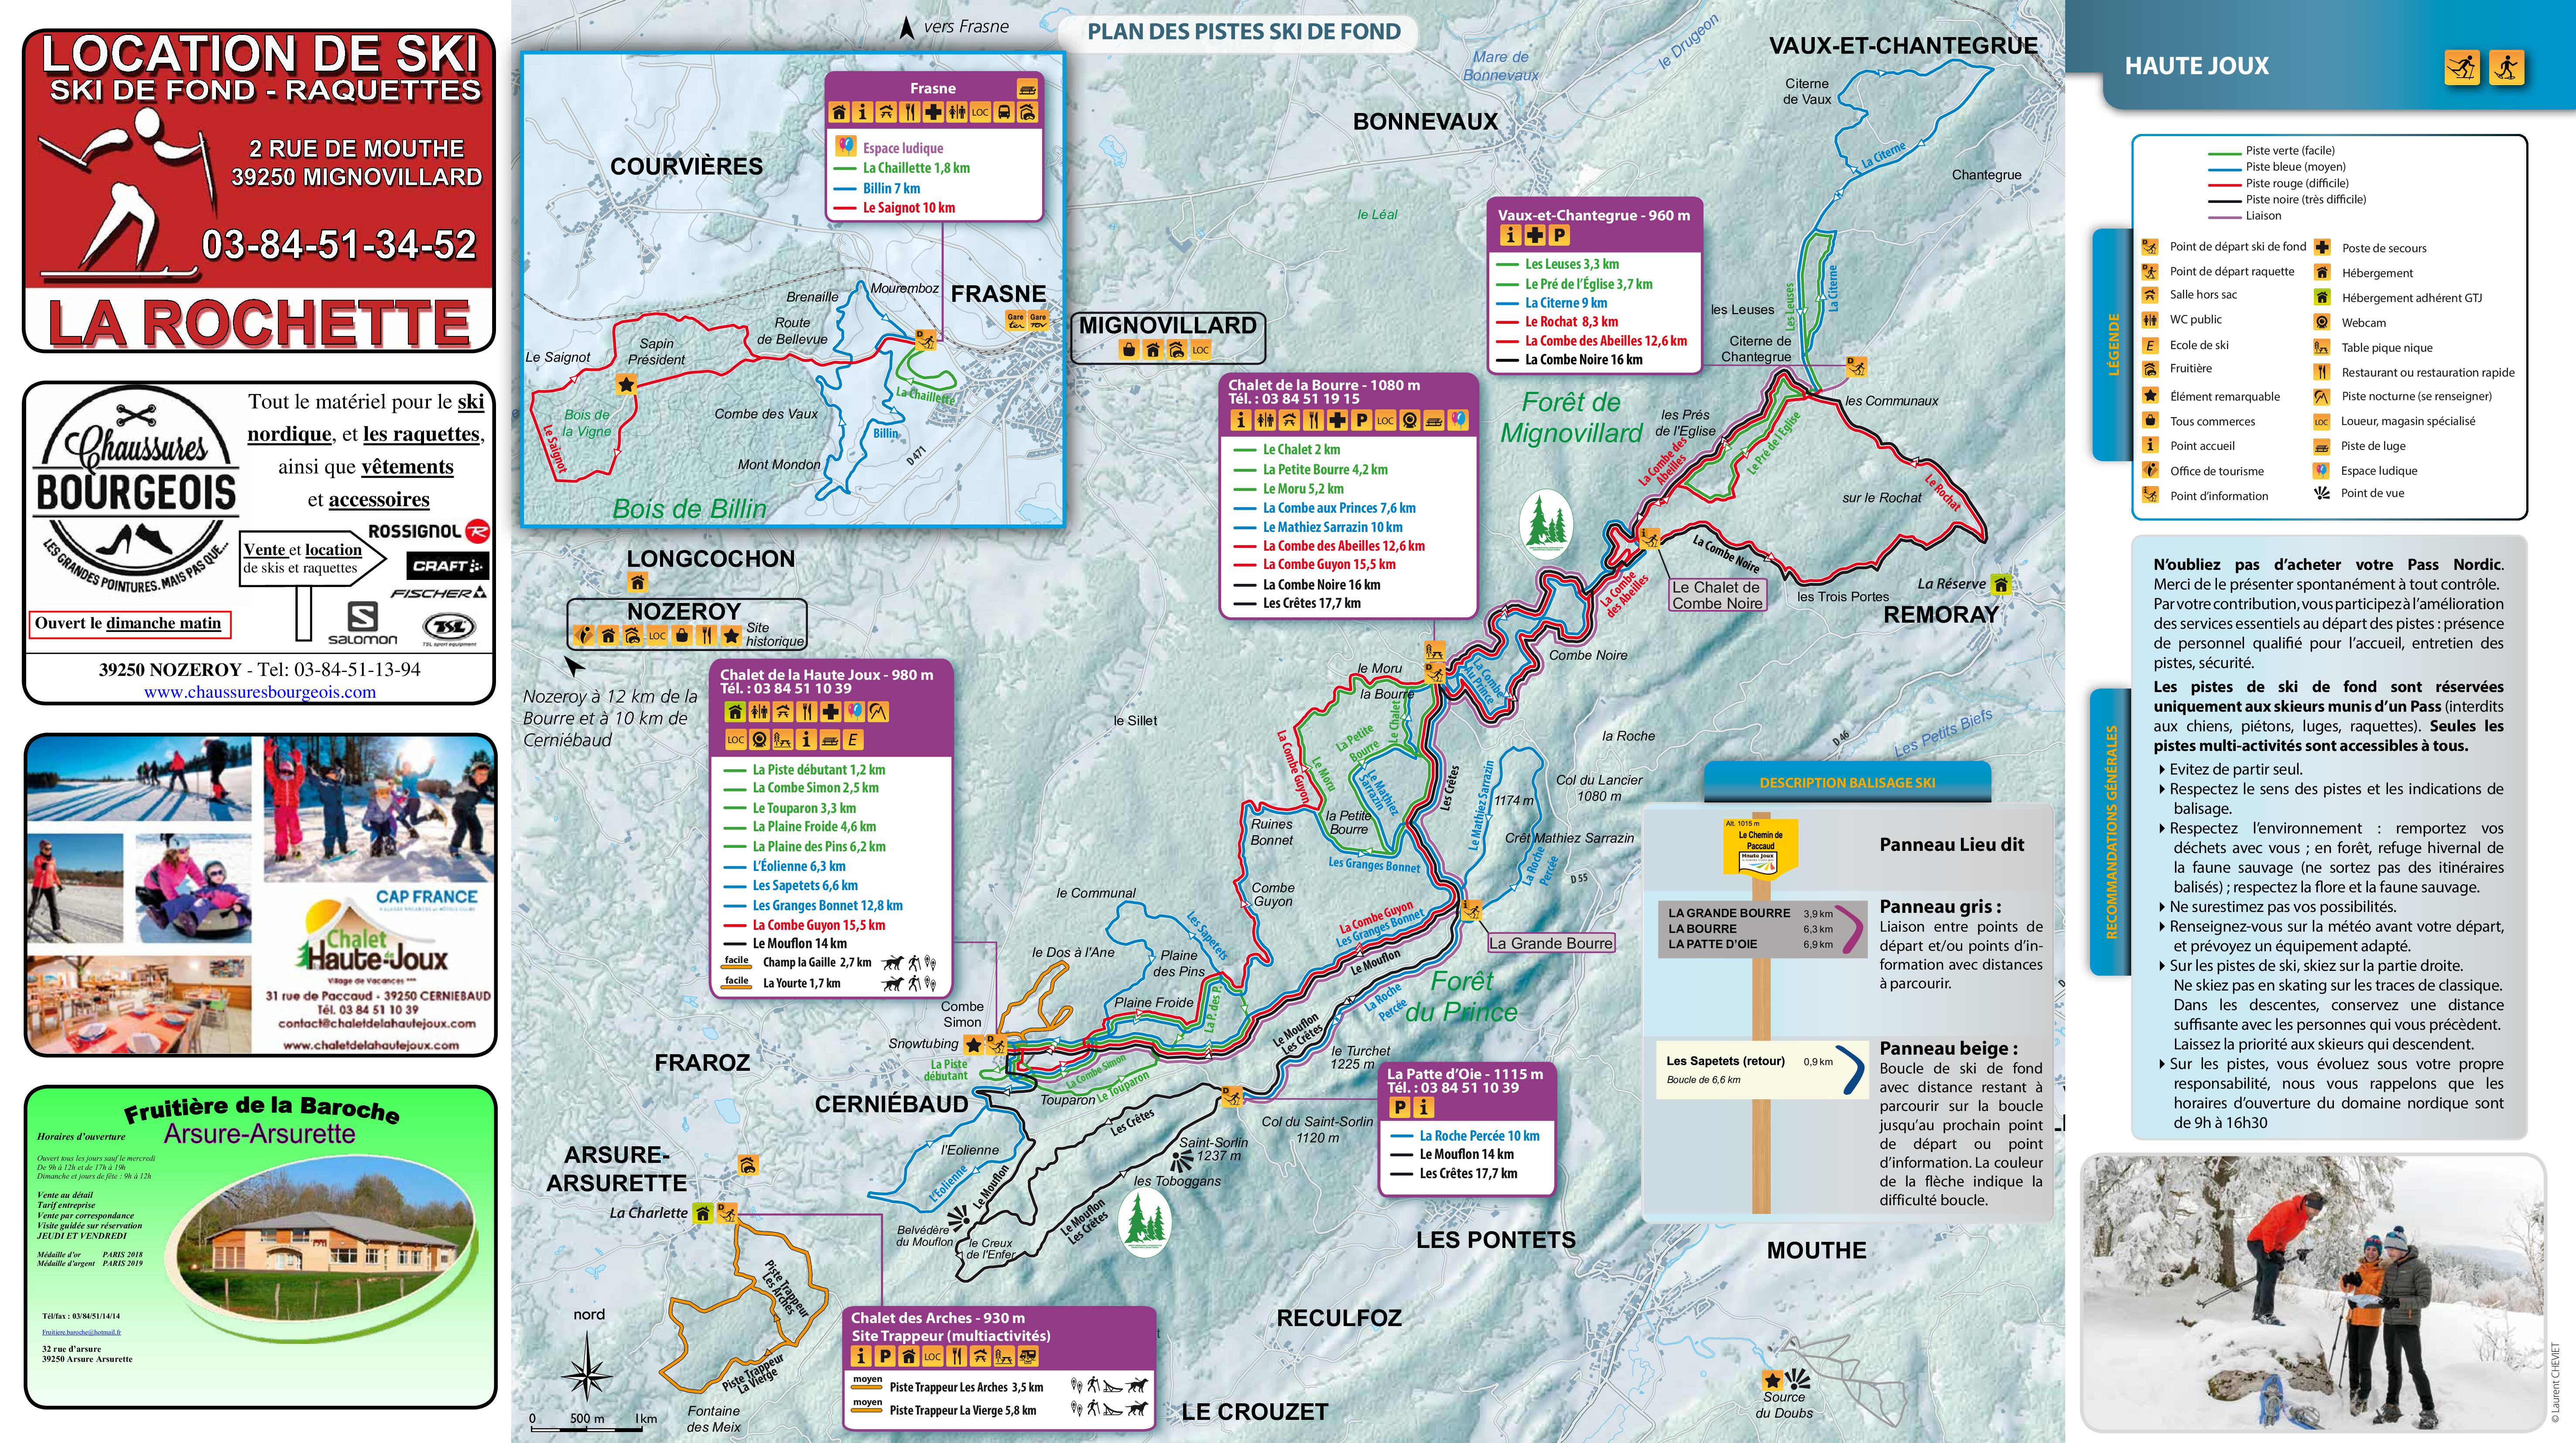 Plan de pistes ski de fond Haute Joux